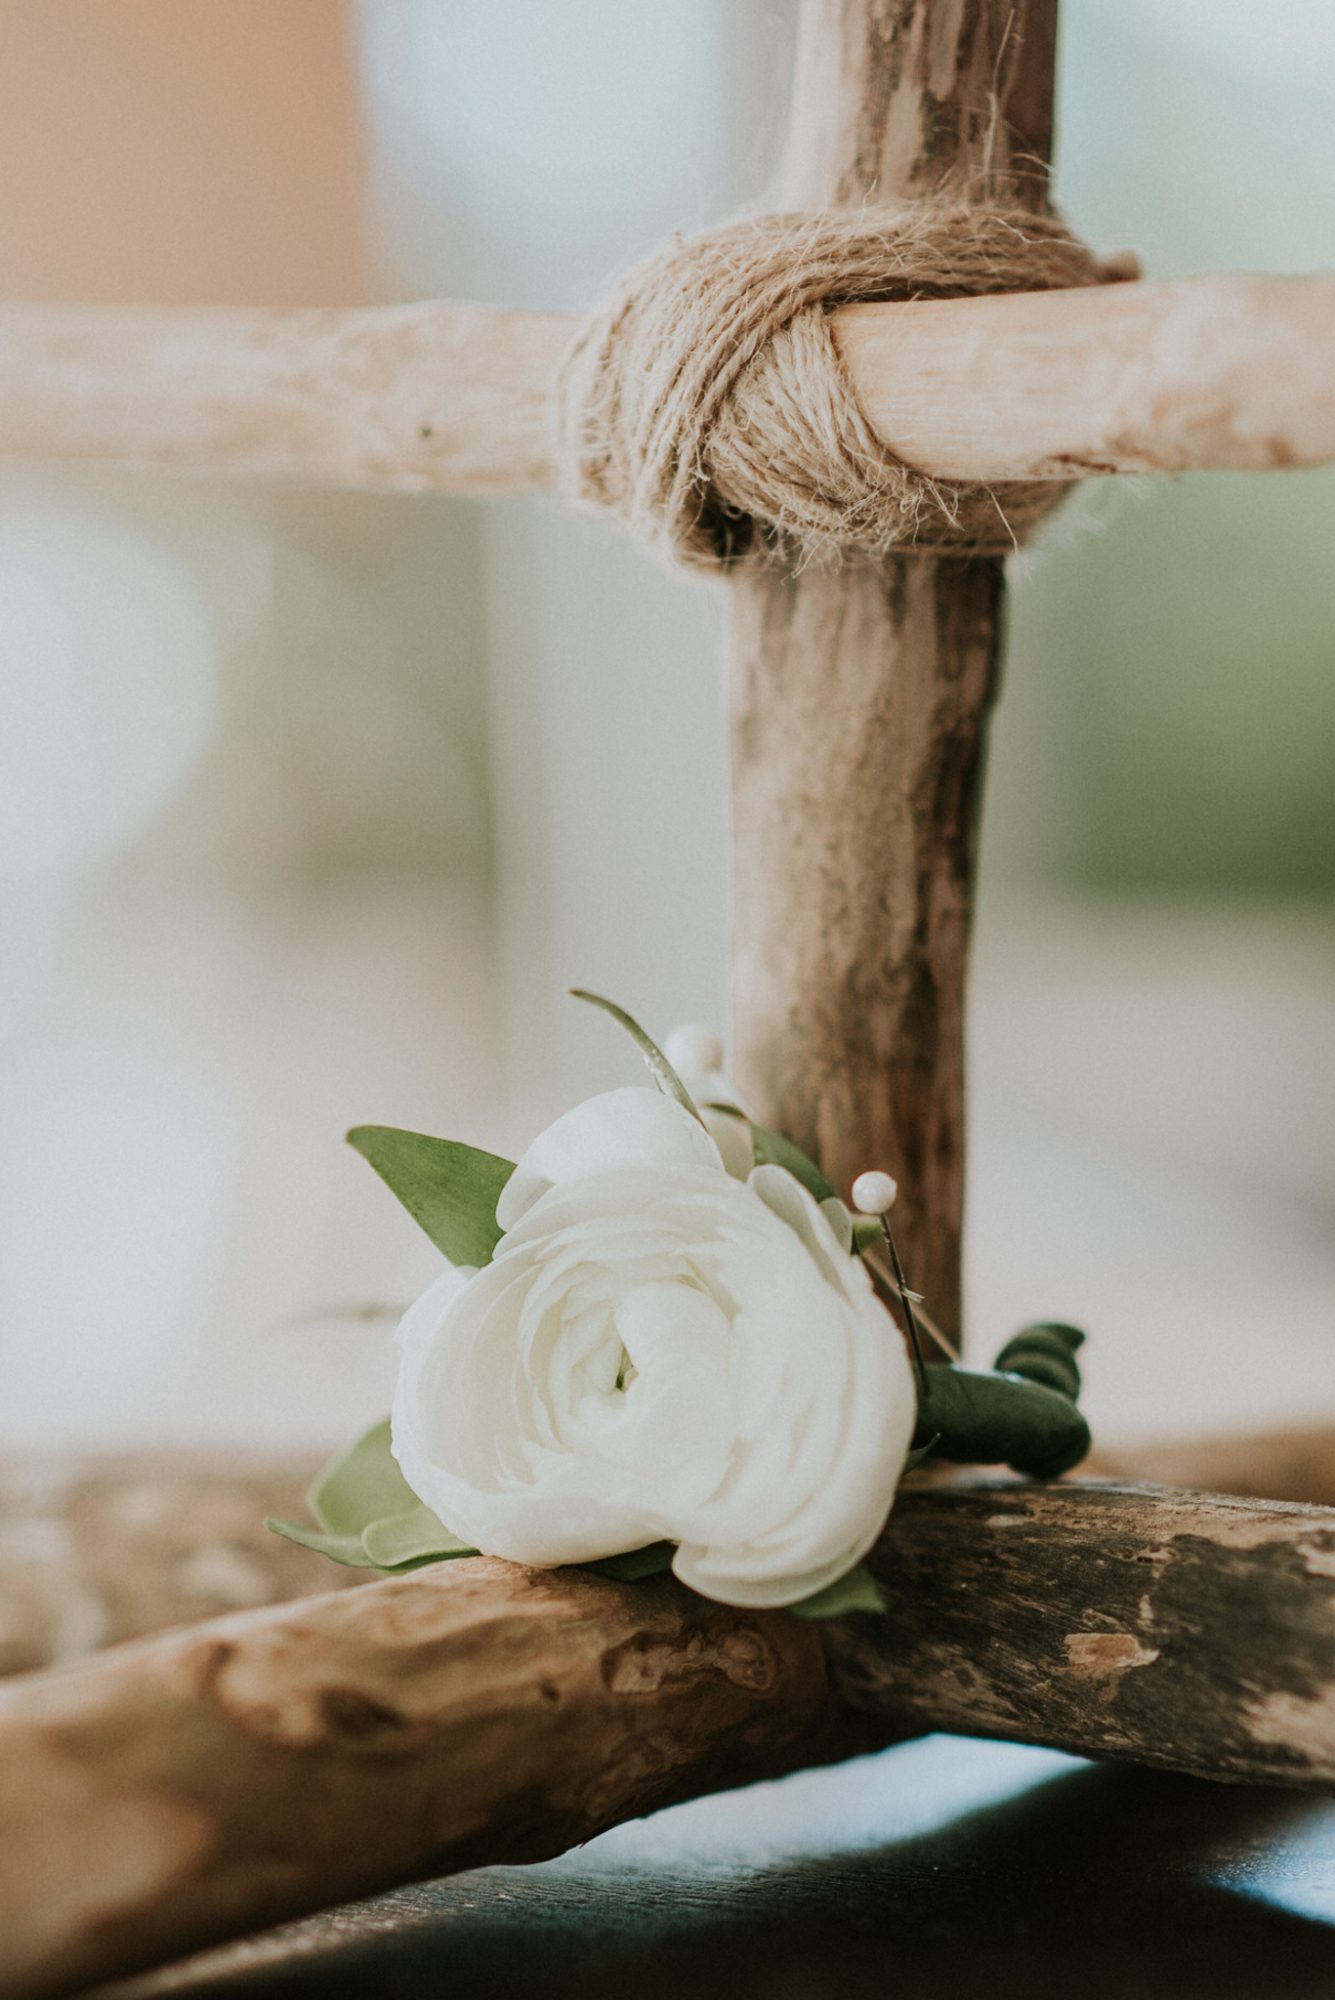 A white flower adorns a wooden stick.